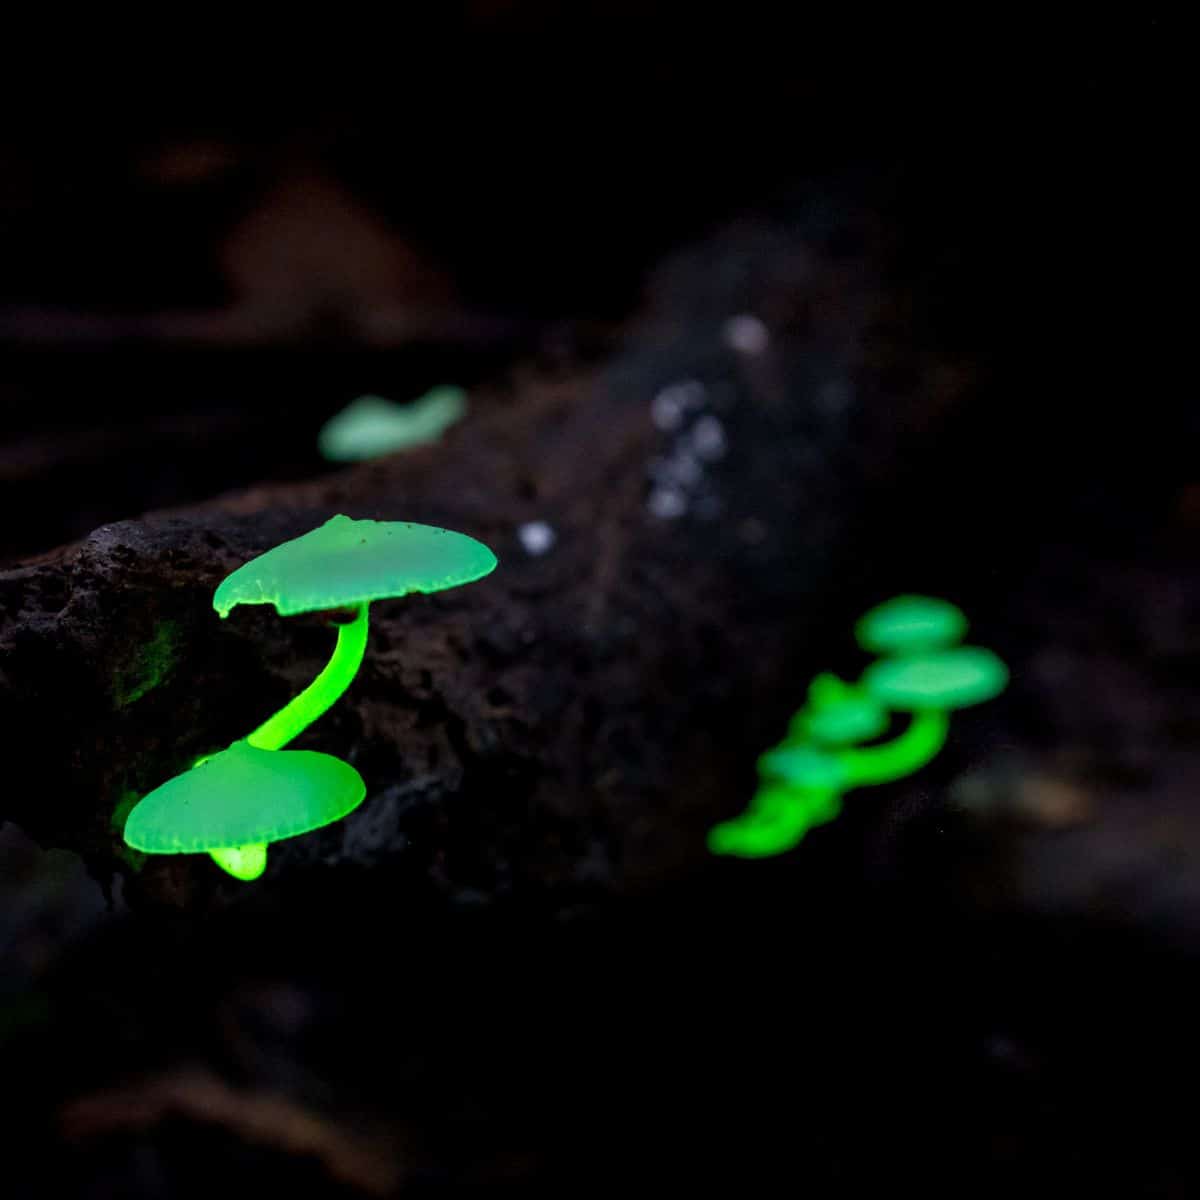 bioluminescent mushrooms, fun fungi facts